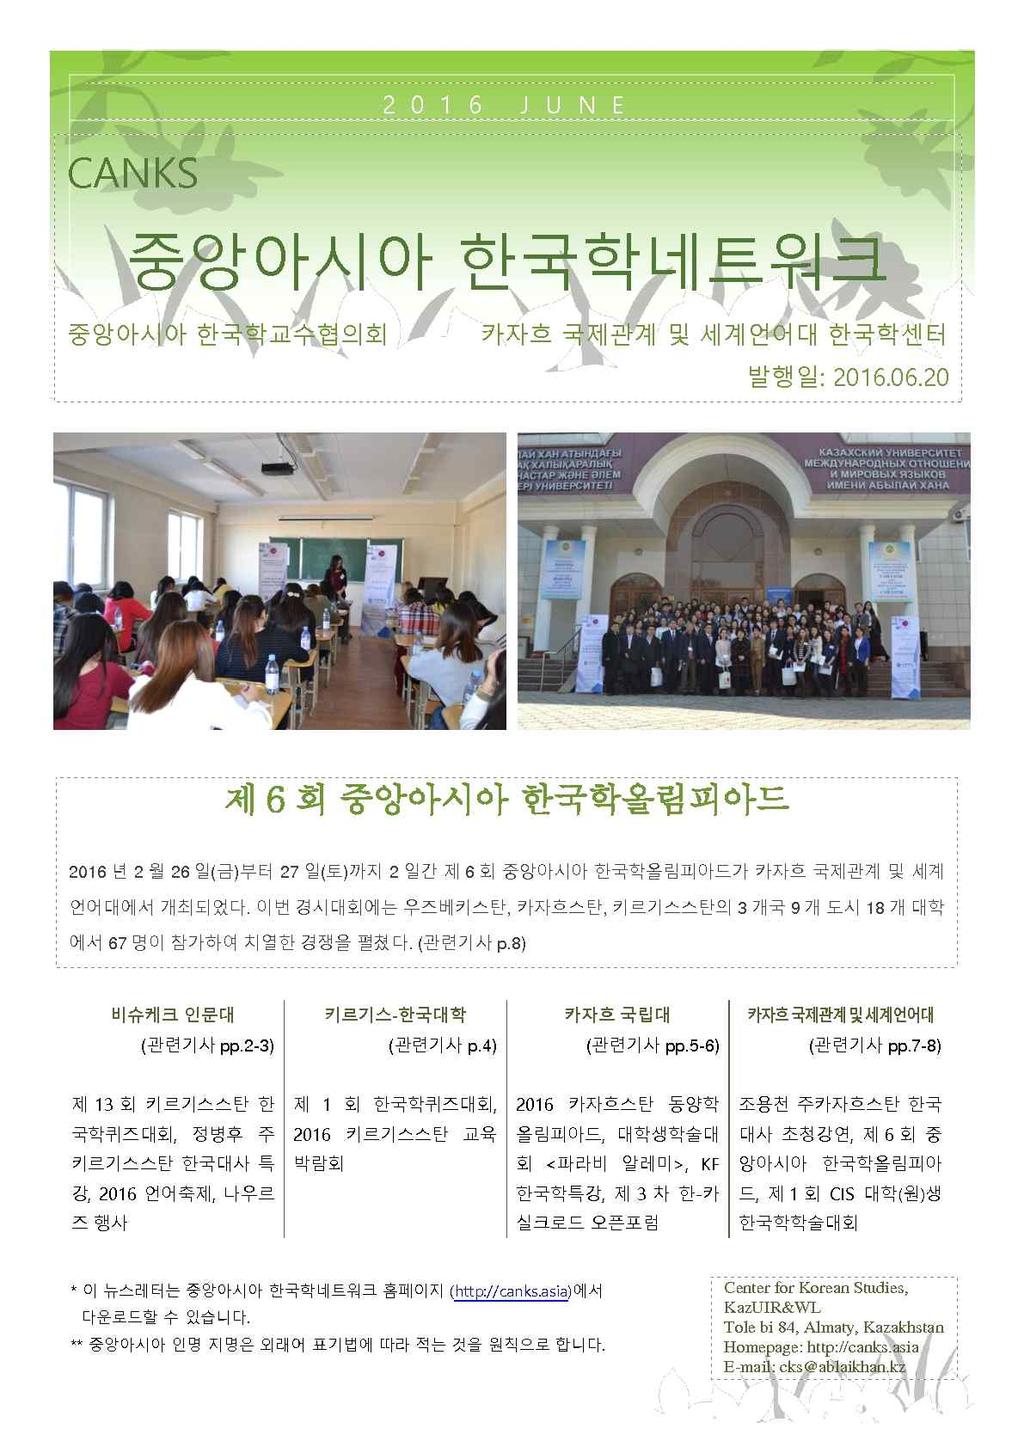 교육 로도한국에서관련기관들의외적지원이